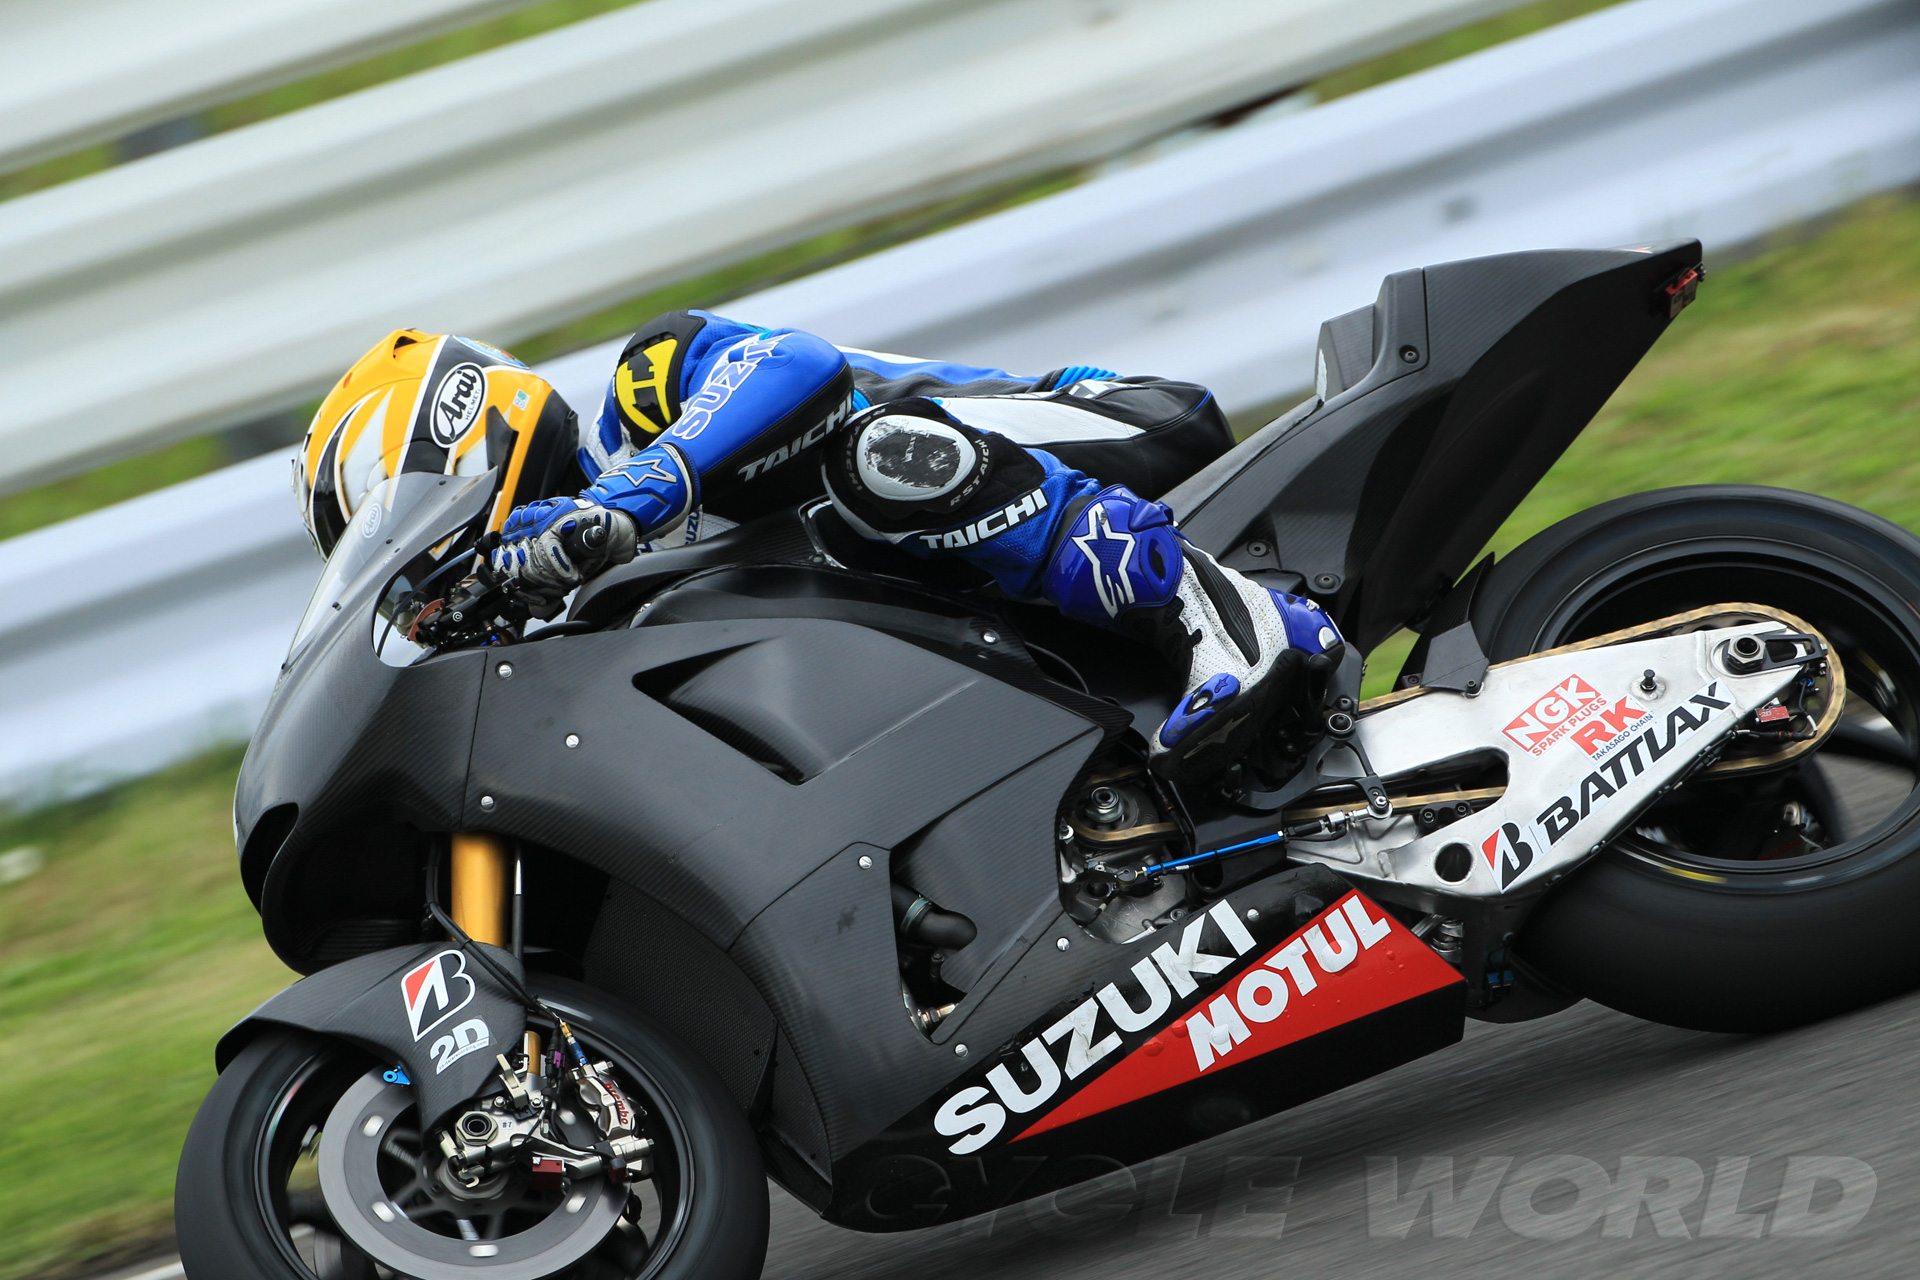 Penampakan Motor Suzuki Untuk Motogp 2014 Dwi Cah